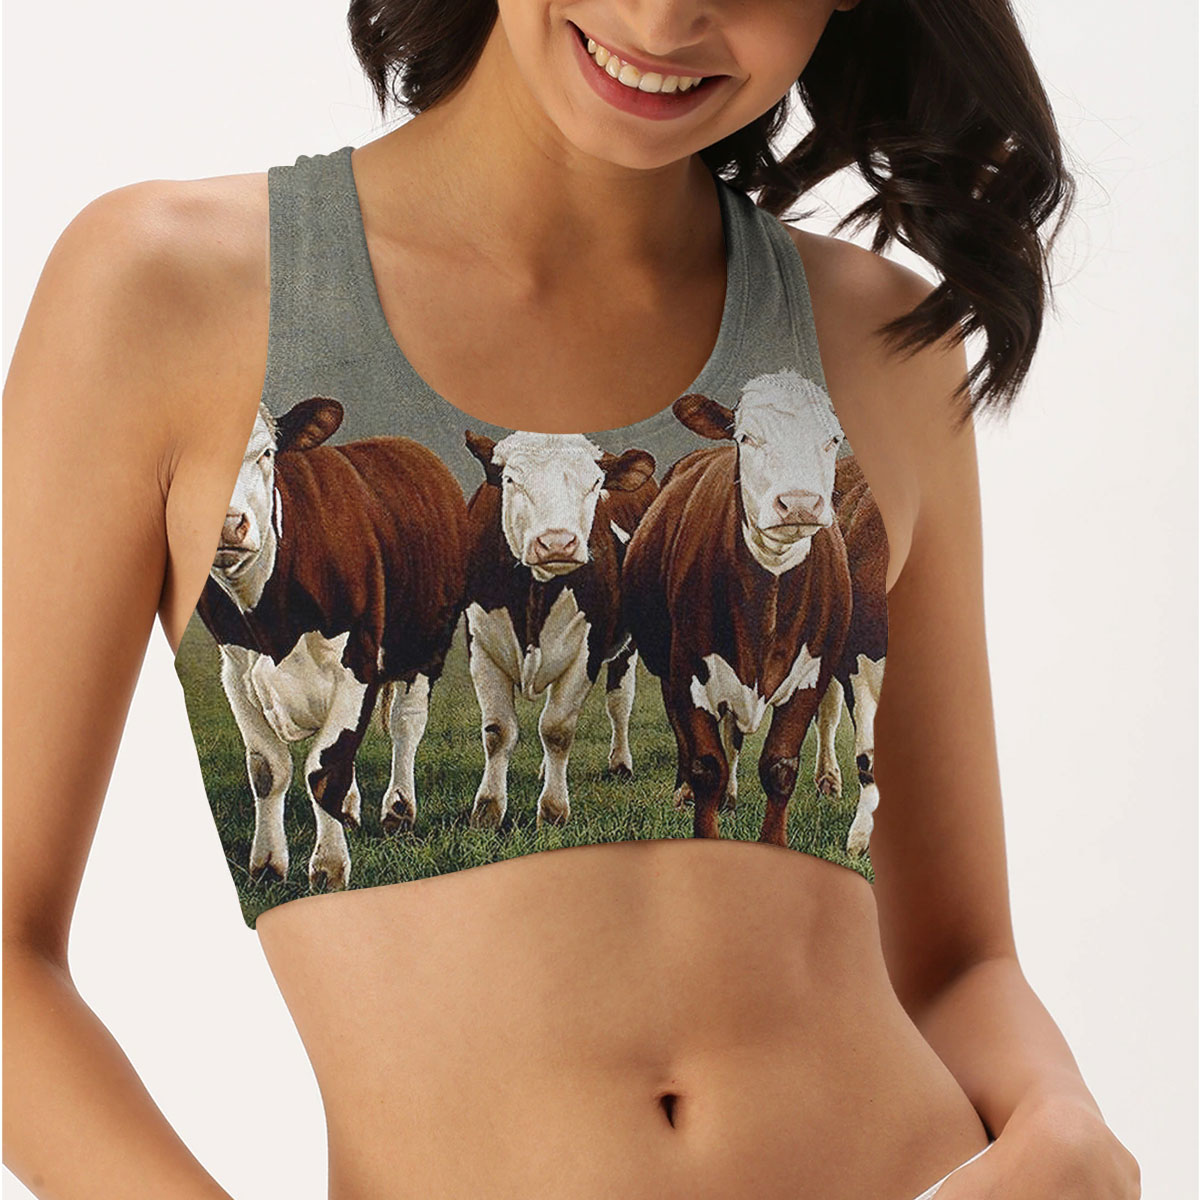 Four Cows Women Sports Bra